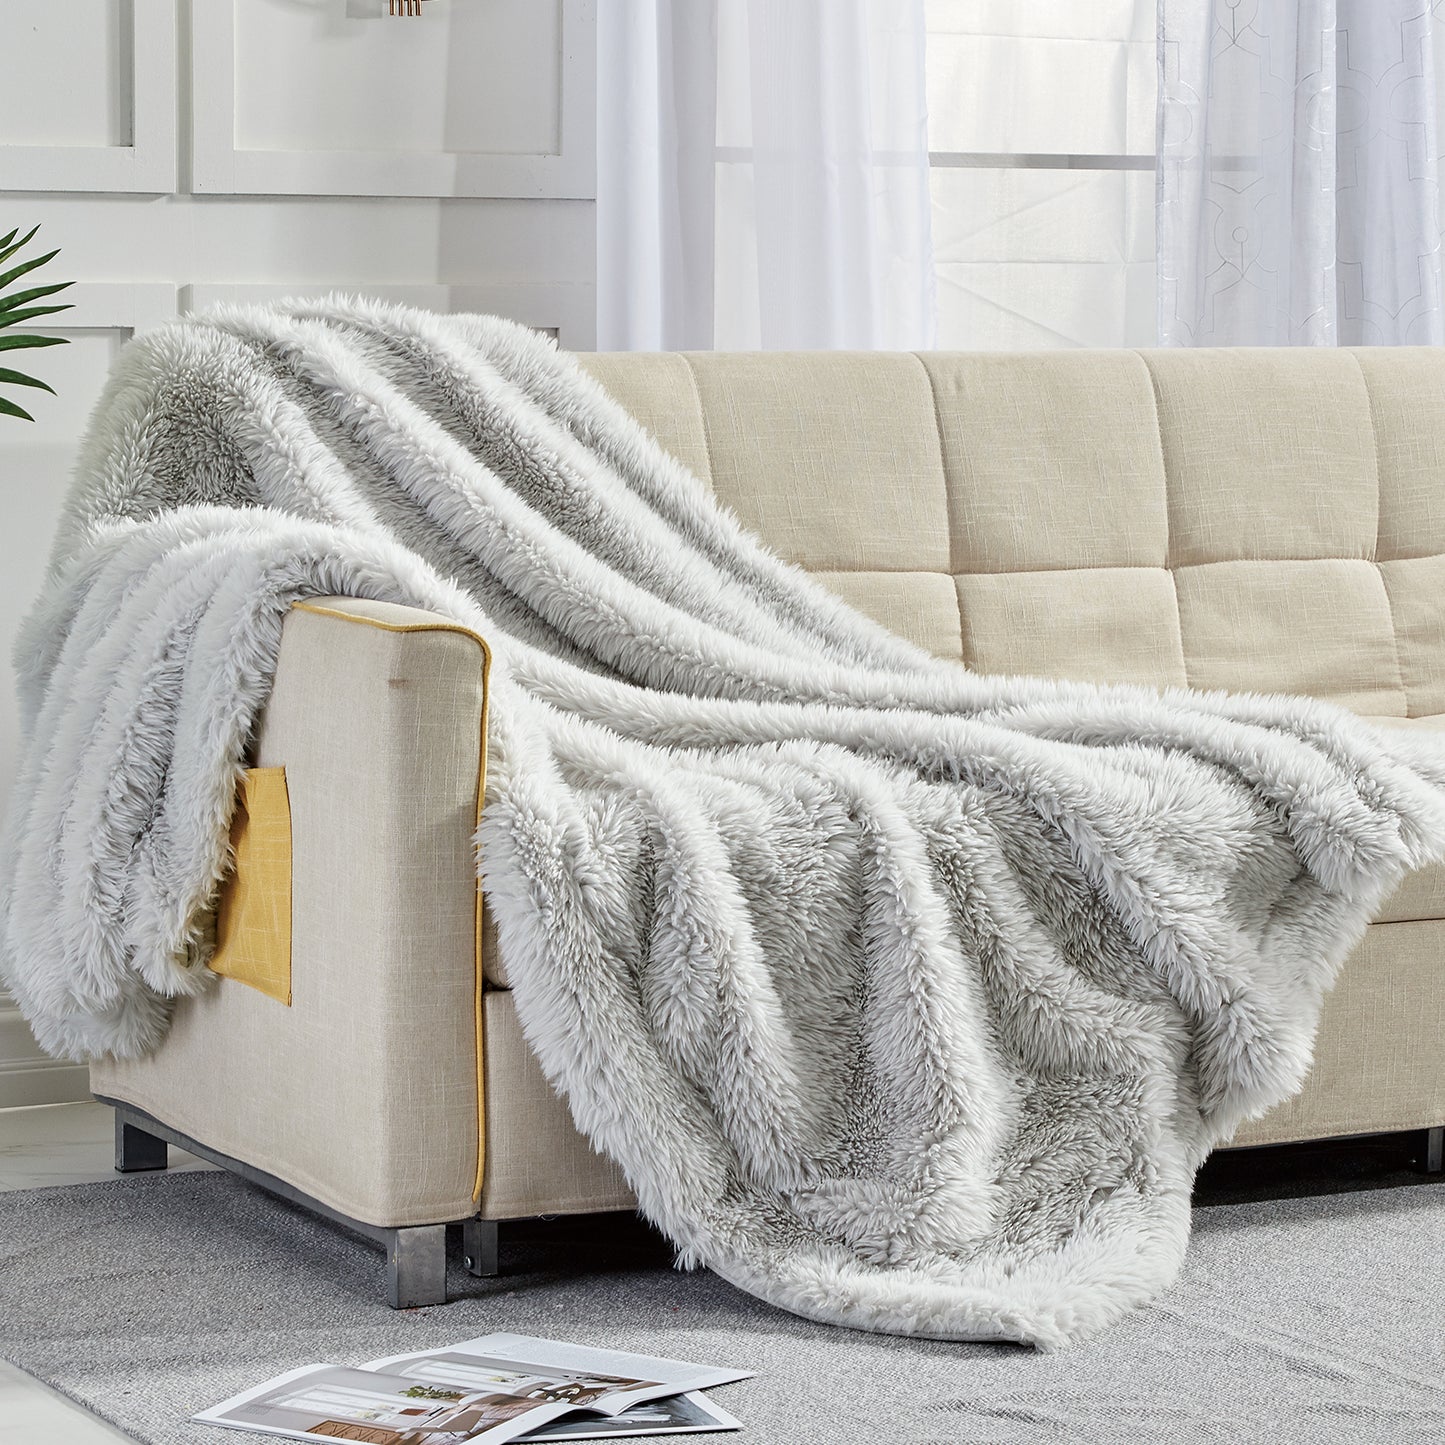 Softan Dual Sided Cozy Faux Fur Throw Blanket